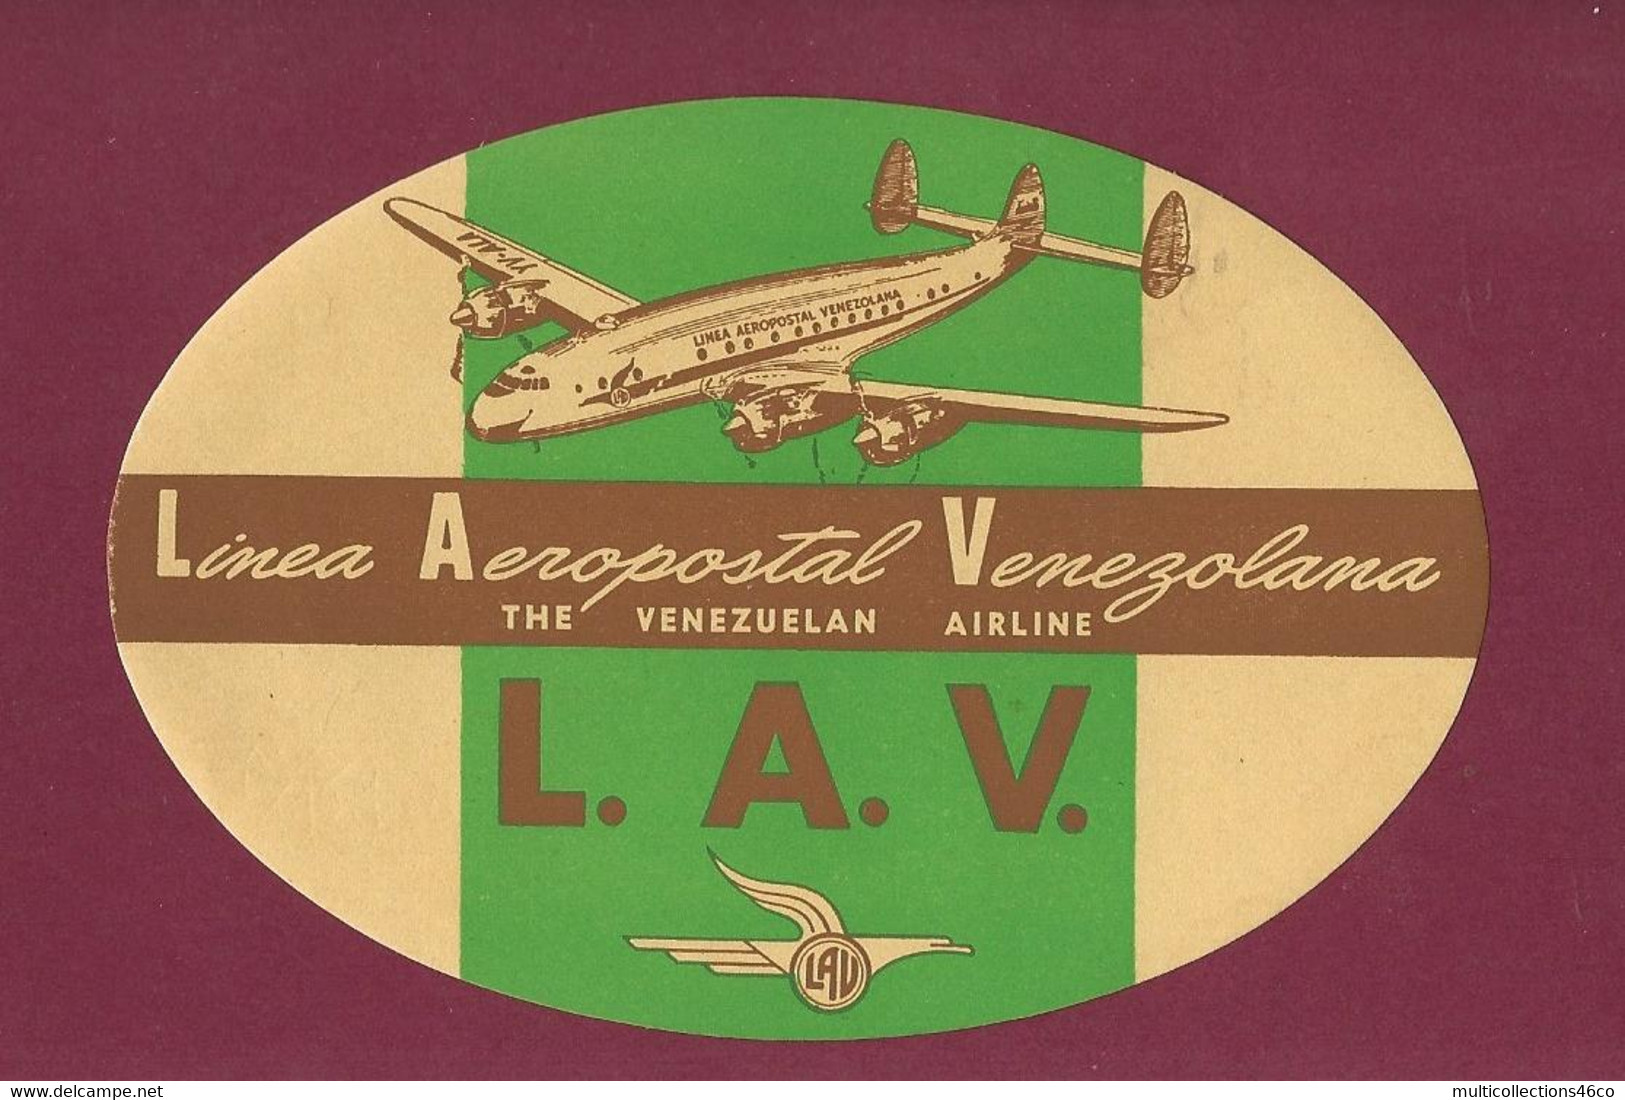 060922 - AVIATION ETIQUETTE A BAGAGE LAV Linea Aeropostal Venezolana THE VENEZUELAN AIRLINE Avion - Étiquettes à Bagages